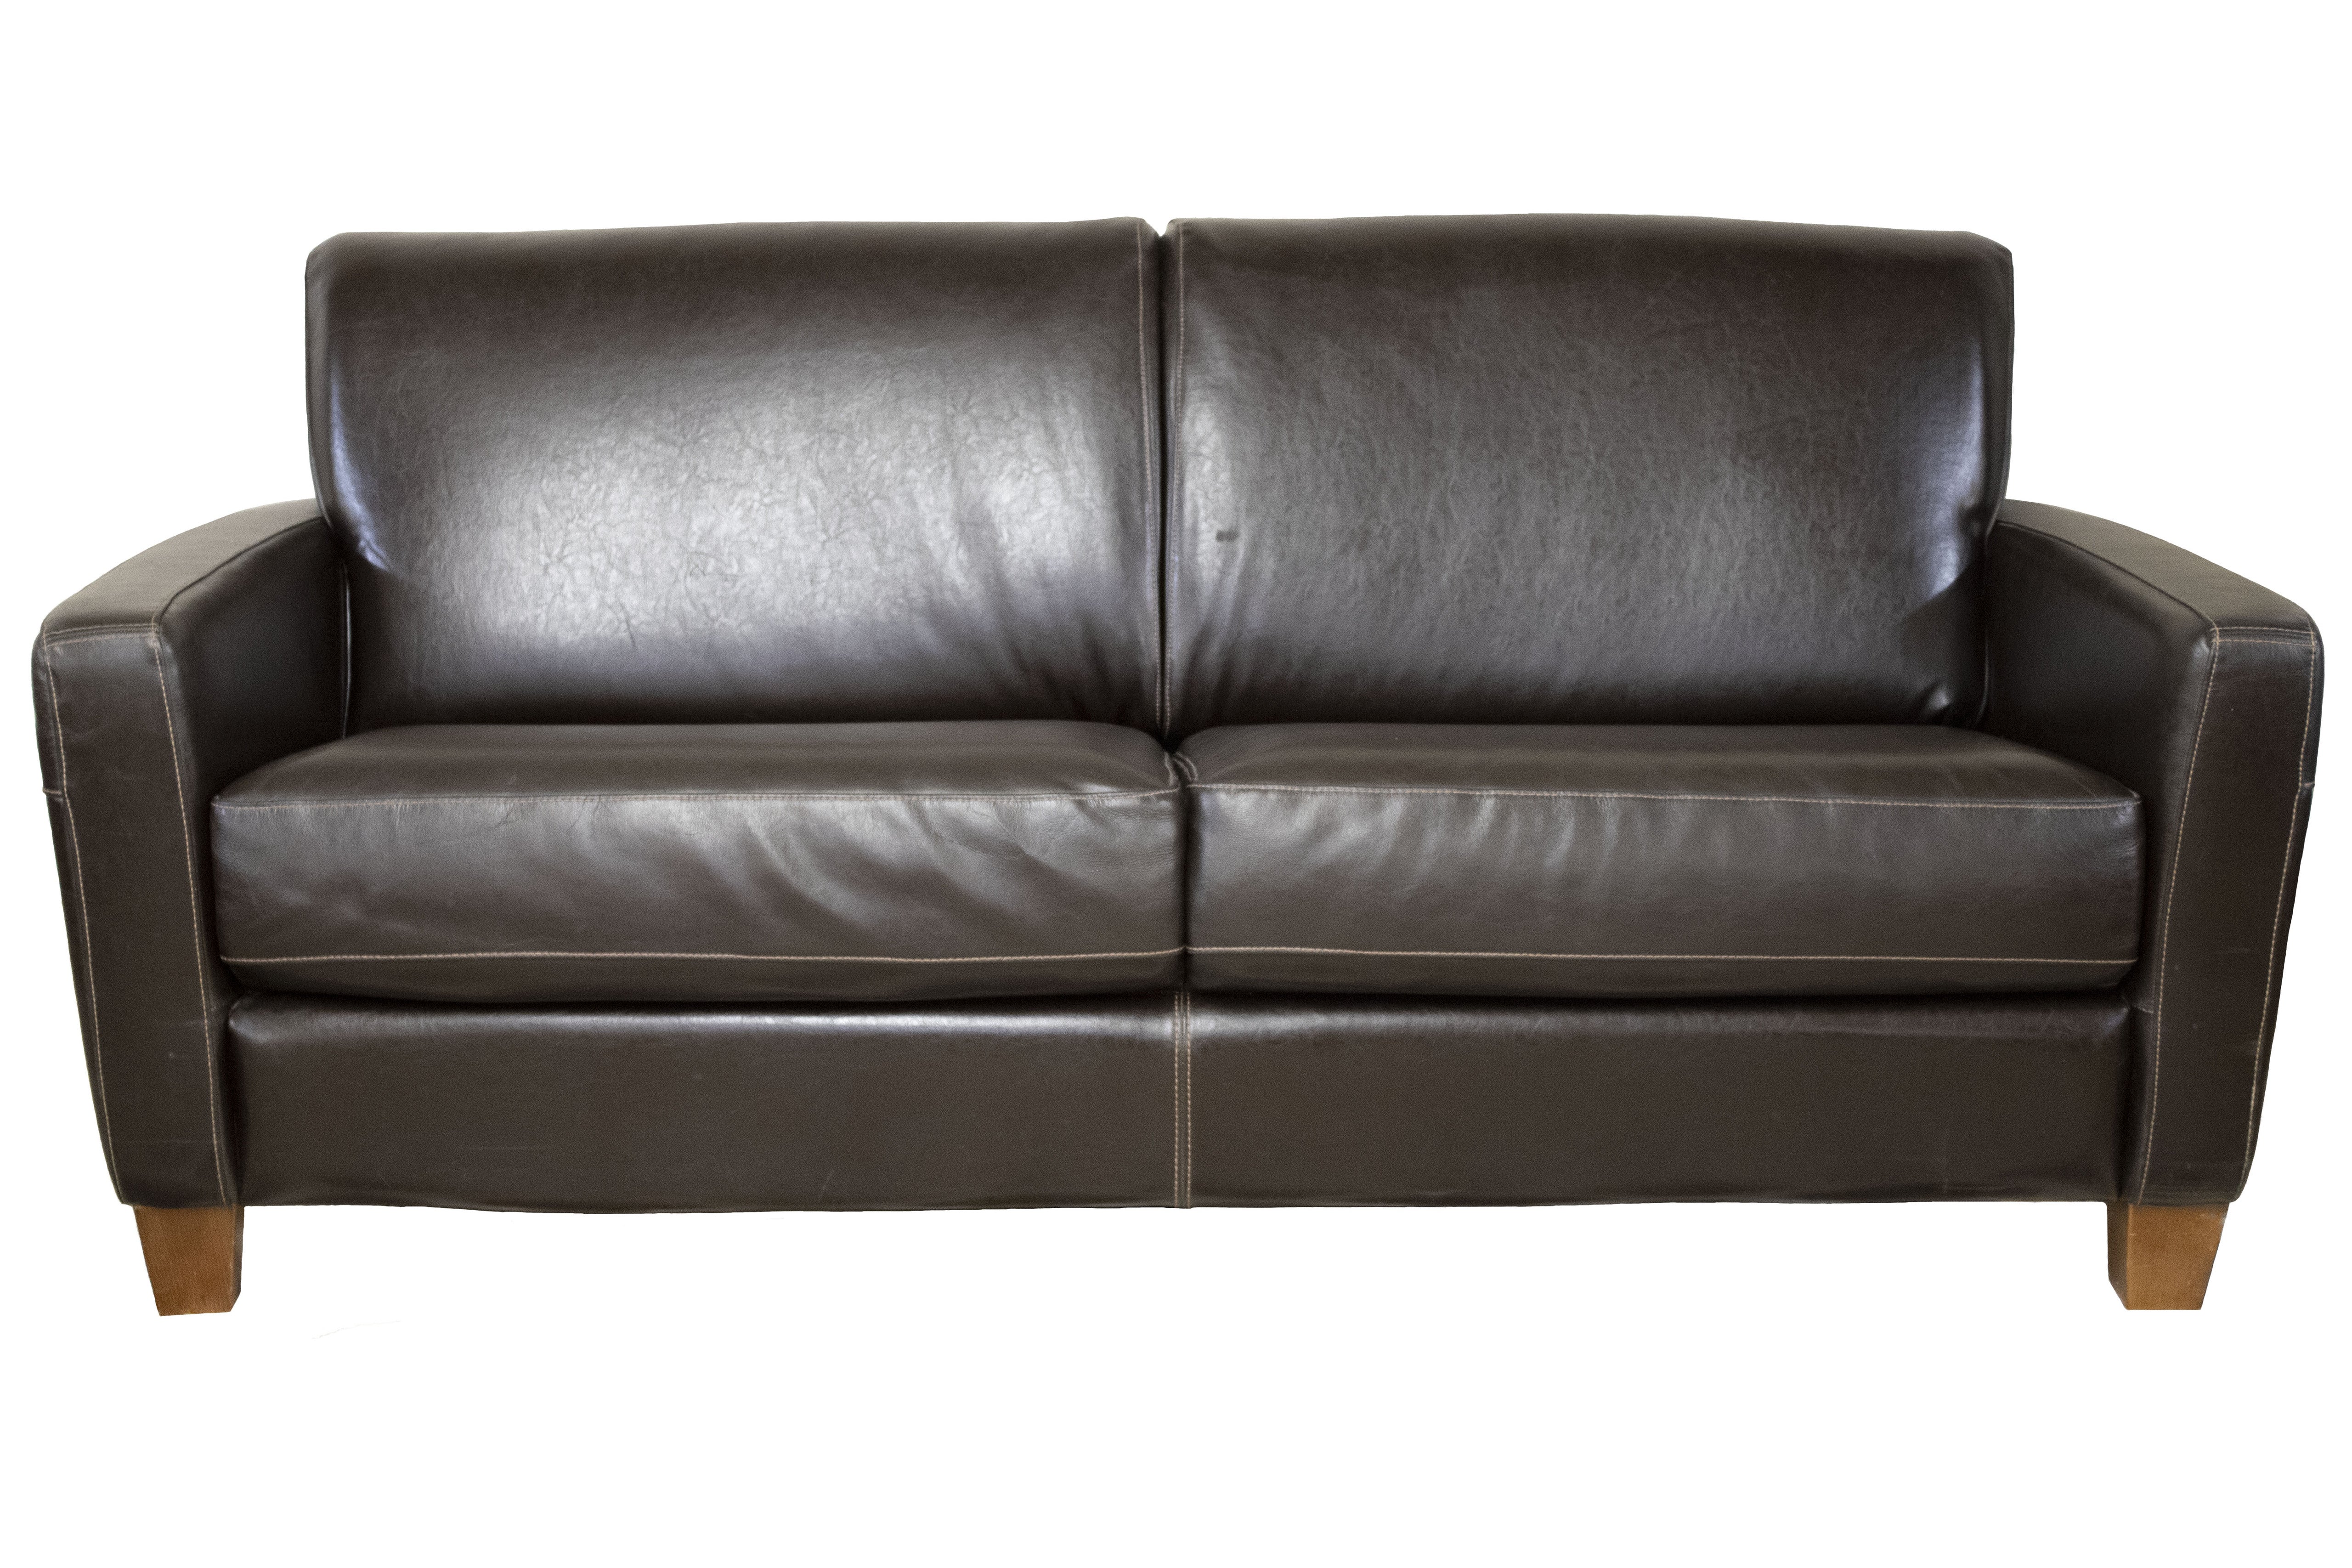 Divani Chateau Dax Leather 2 Seat Sofa - Preowned